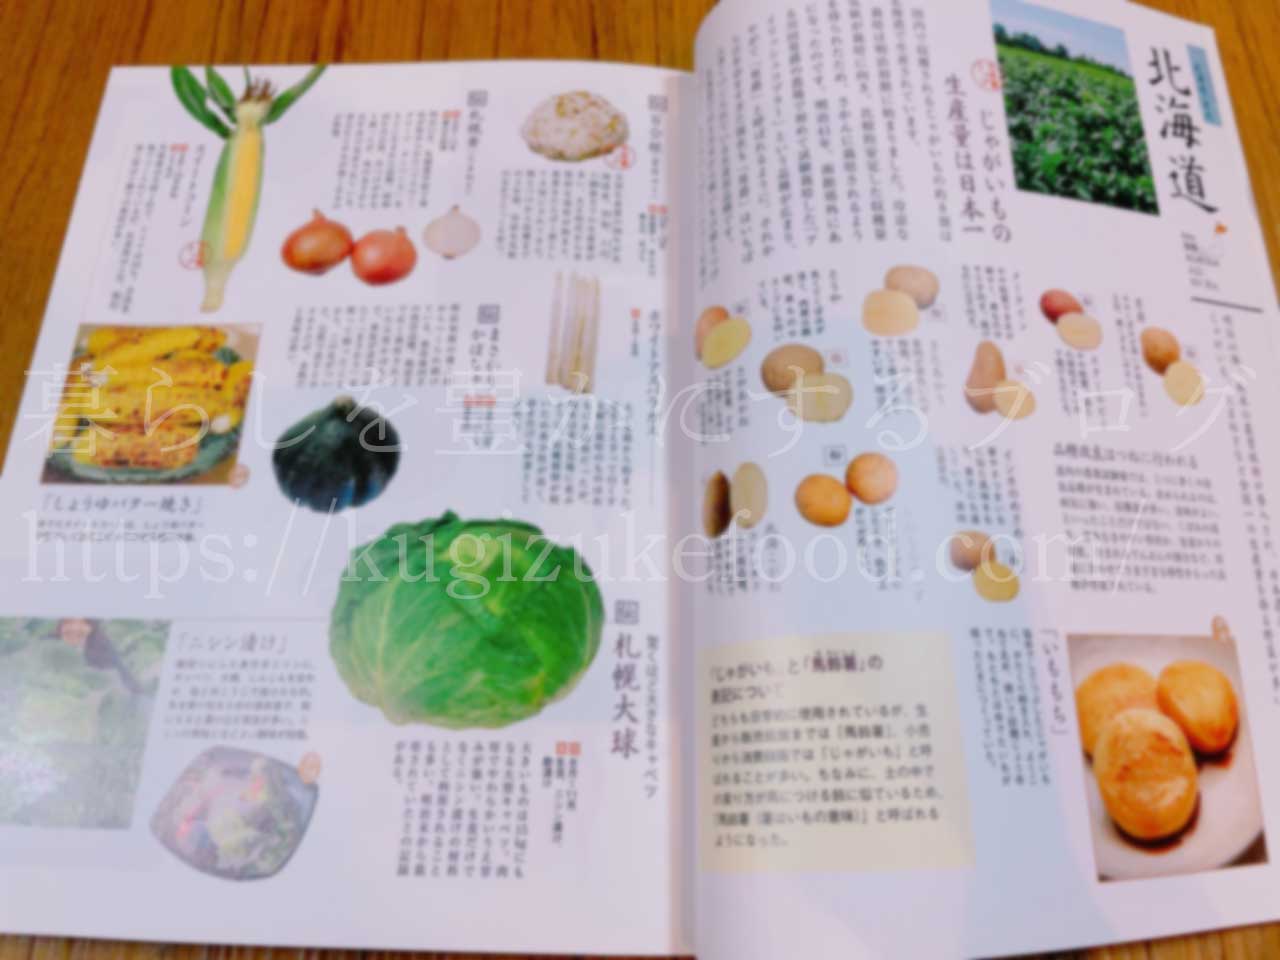 からだにおいしい野菜の便利帳「伝統野菜・全国名物マップ」